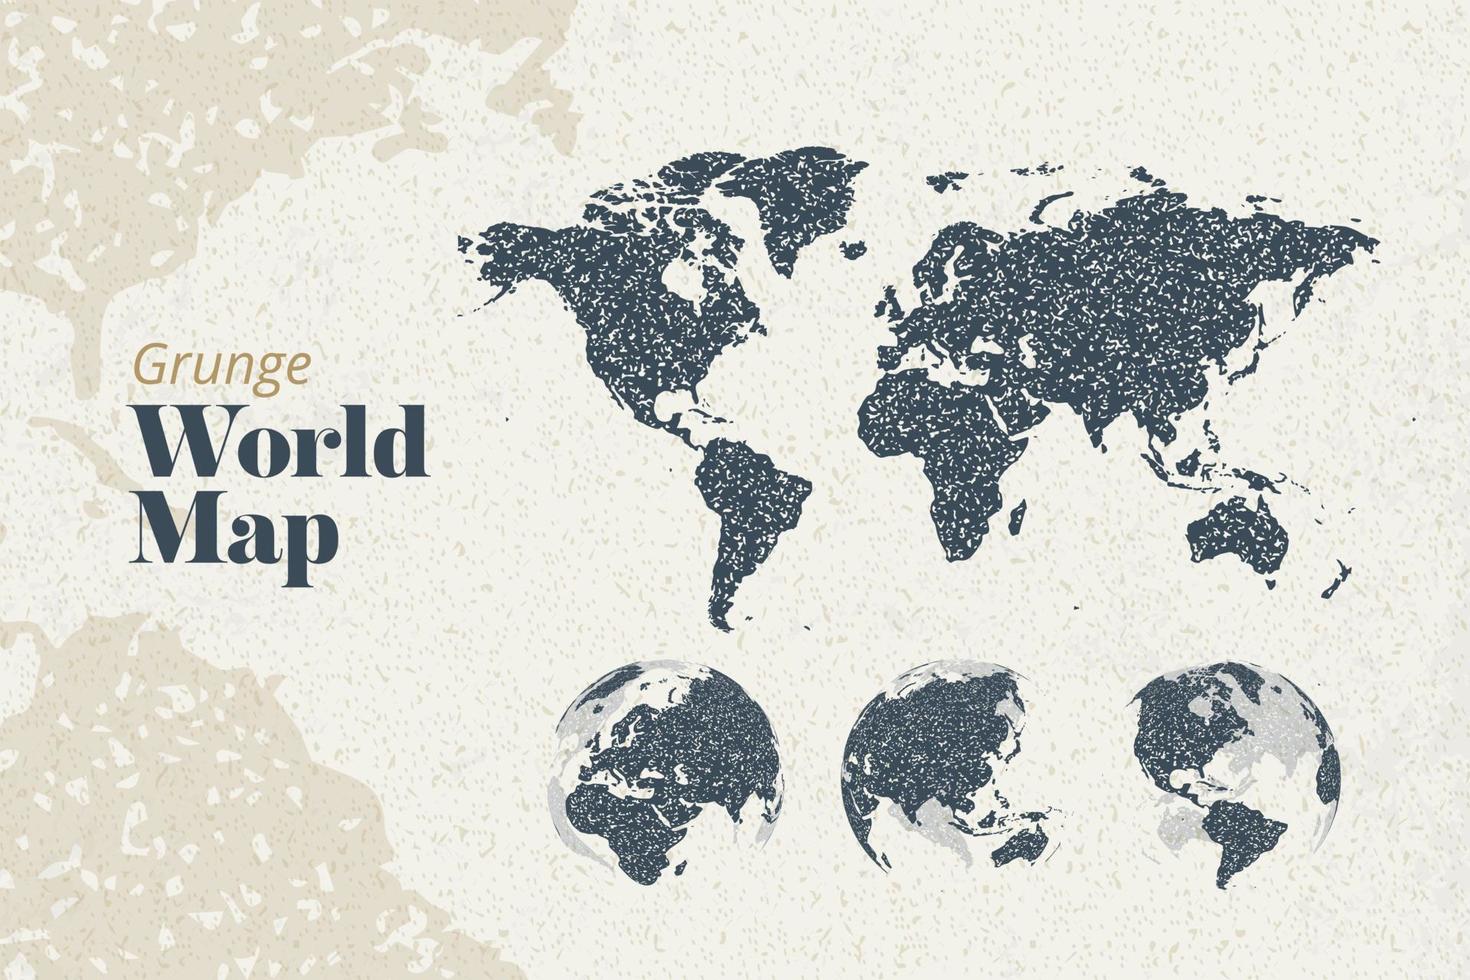 mapa do mundo grunge e globos da terra mostrando todos os continentes. modelo de ilustração vetorial para web design, relatórios anuais, infográficos, apresentação de negócios, marketing, viagens e turismo. vetor